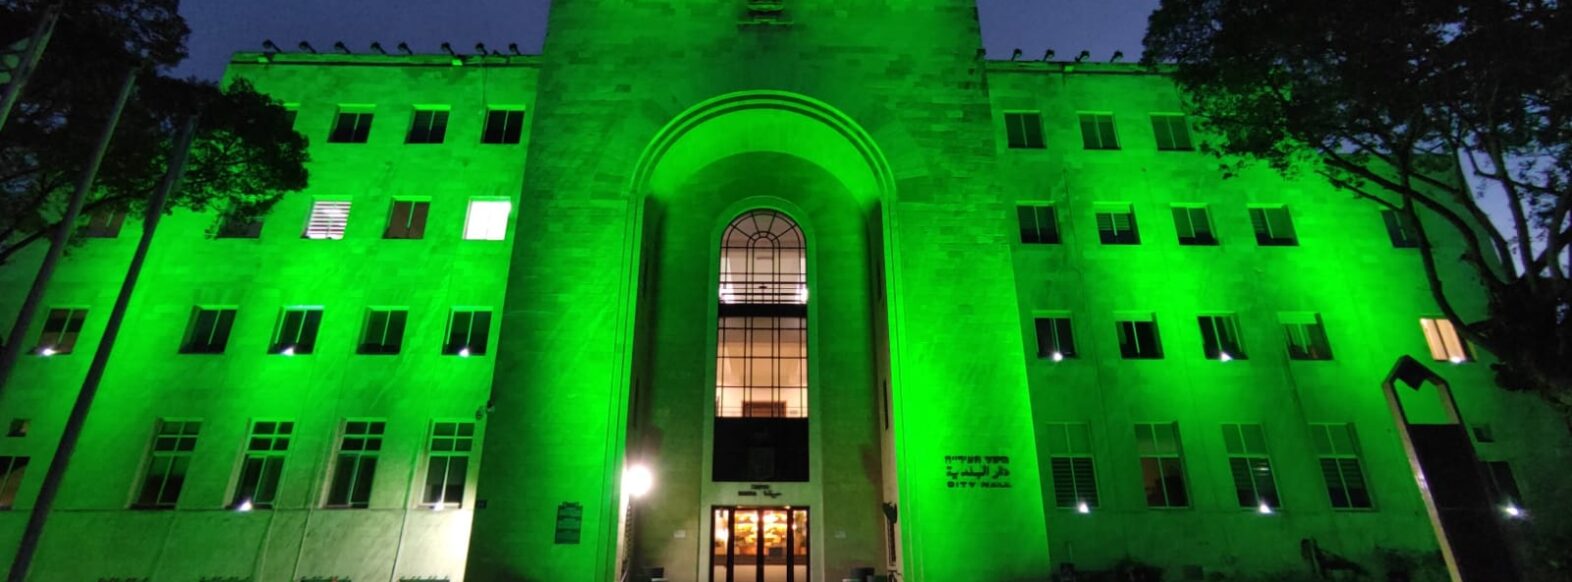 לרגל זכיית מכבי חיפה באליפות, בית העירייה בחיפה נצבע ירוק